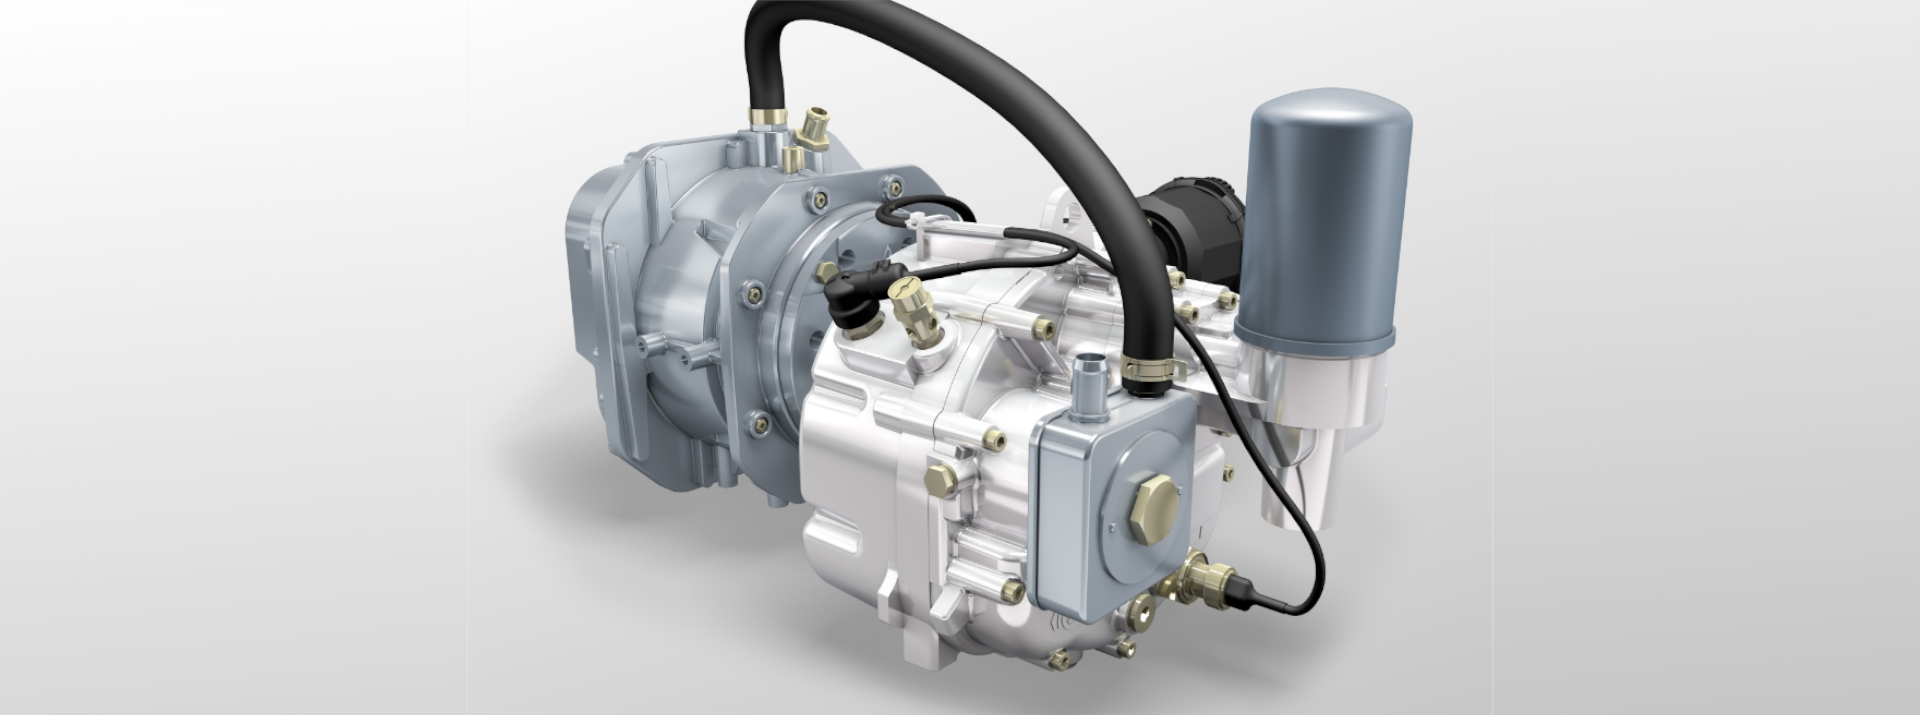 Neuer, elektrischer Kompressor von CPT: Eine echte Alternative zu  Turbolader und Kompressoren? : Unsere Motoren können alleine atmen